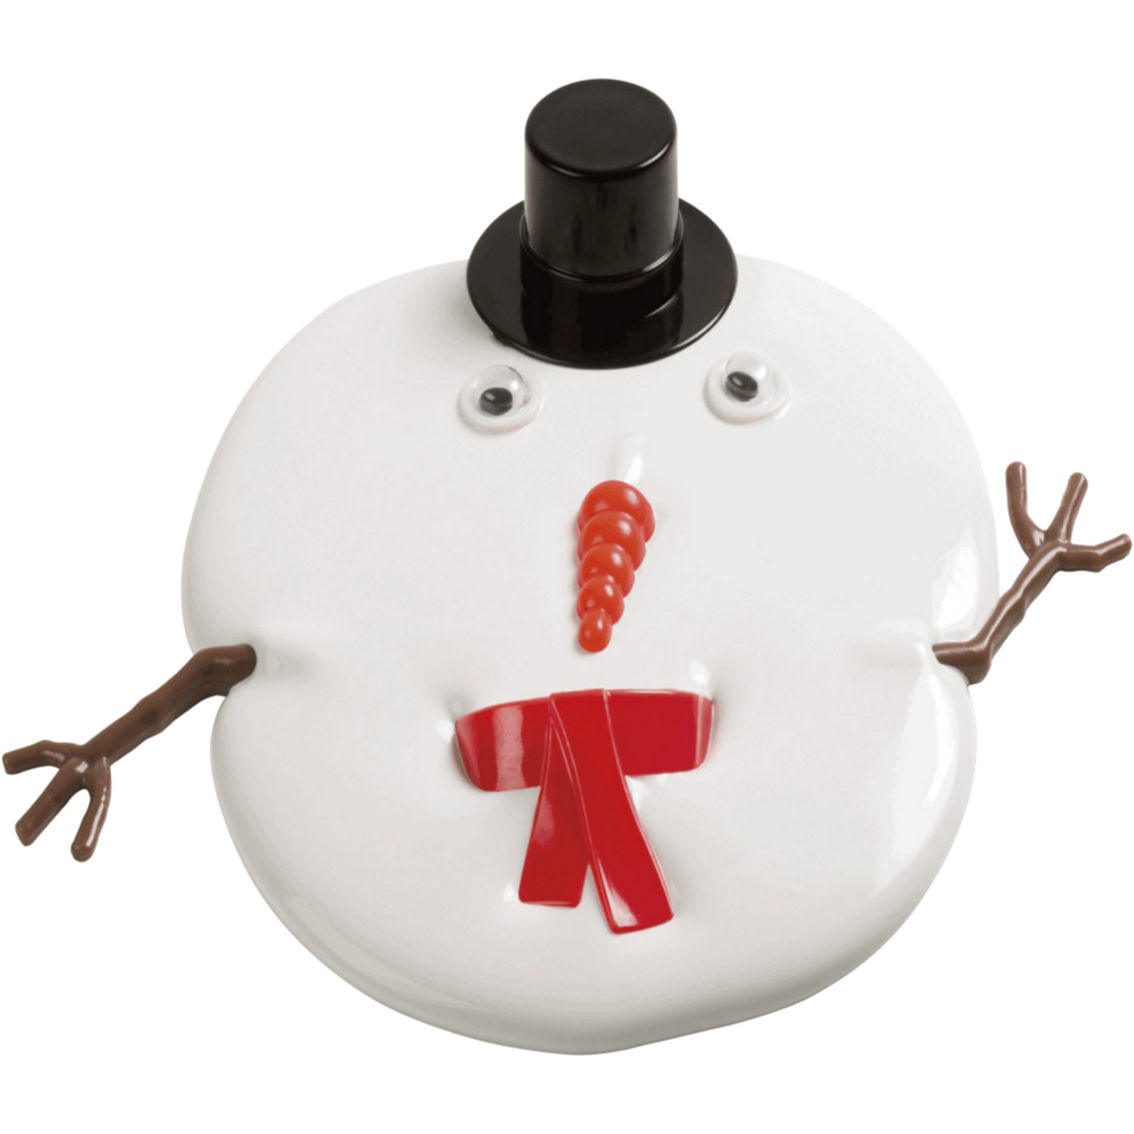 Toysmith Melting Snowman Playset - Image 4 of 4